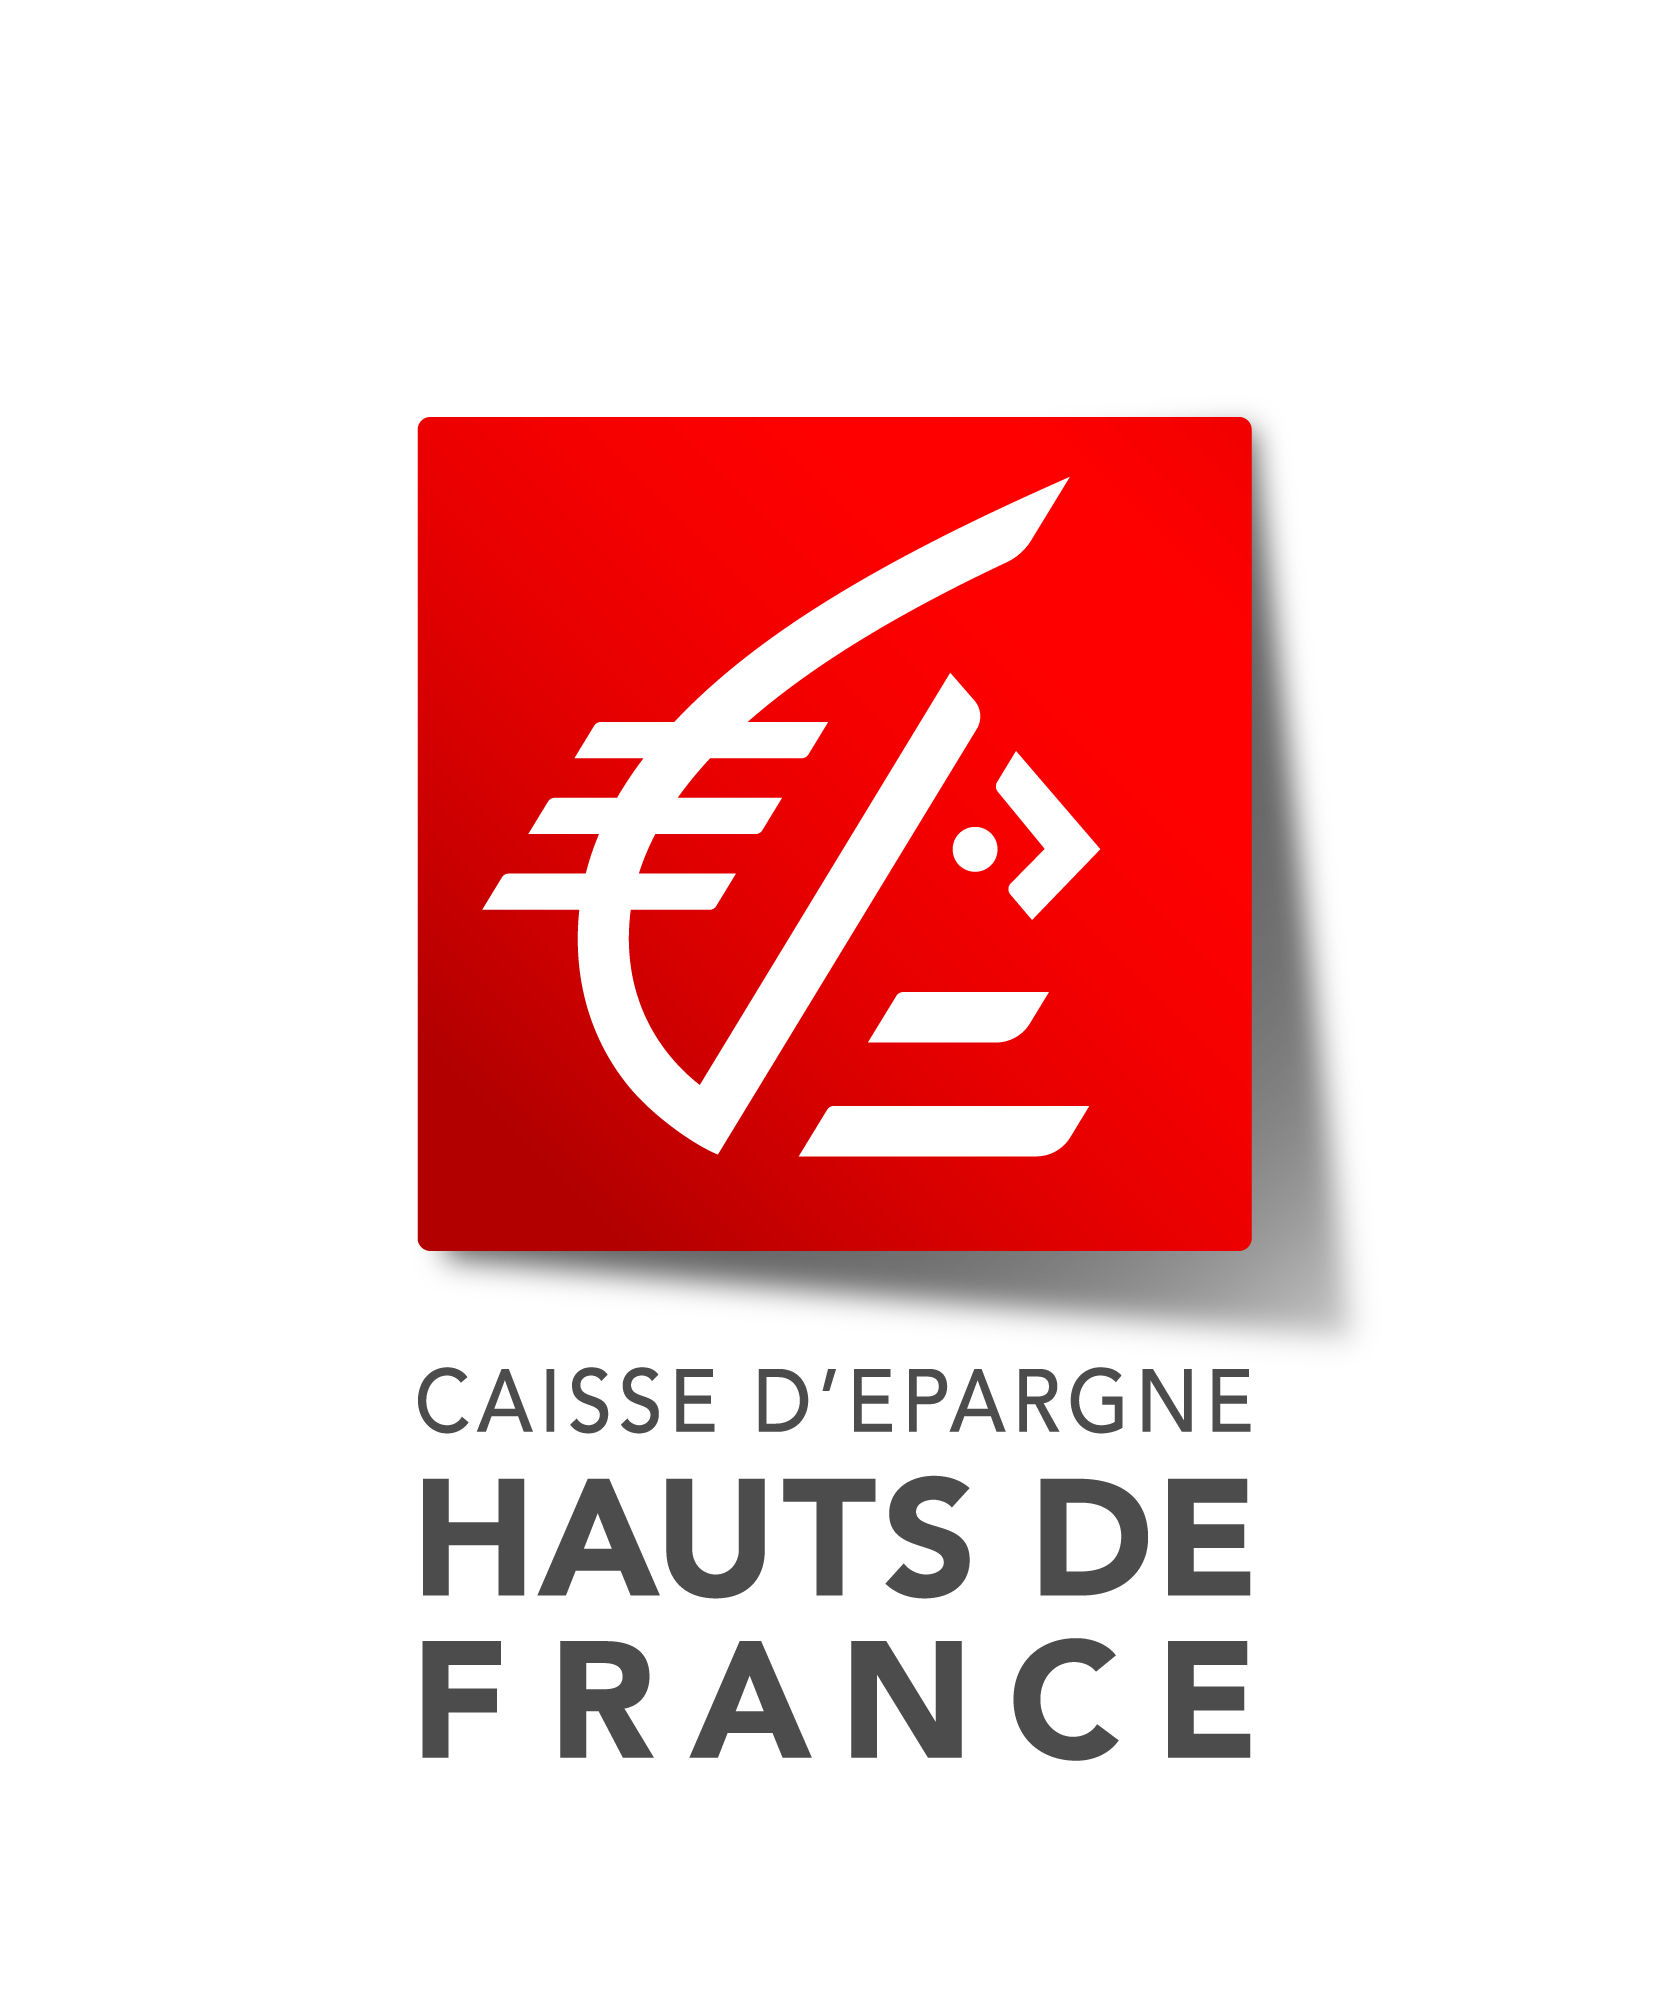 CAISSE D'EPARGNE HAUTS DE FRANCE